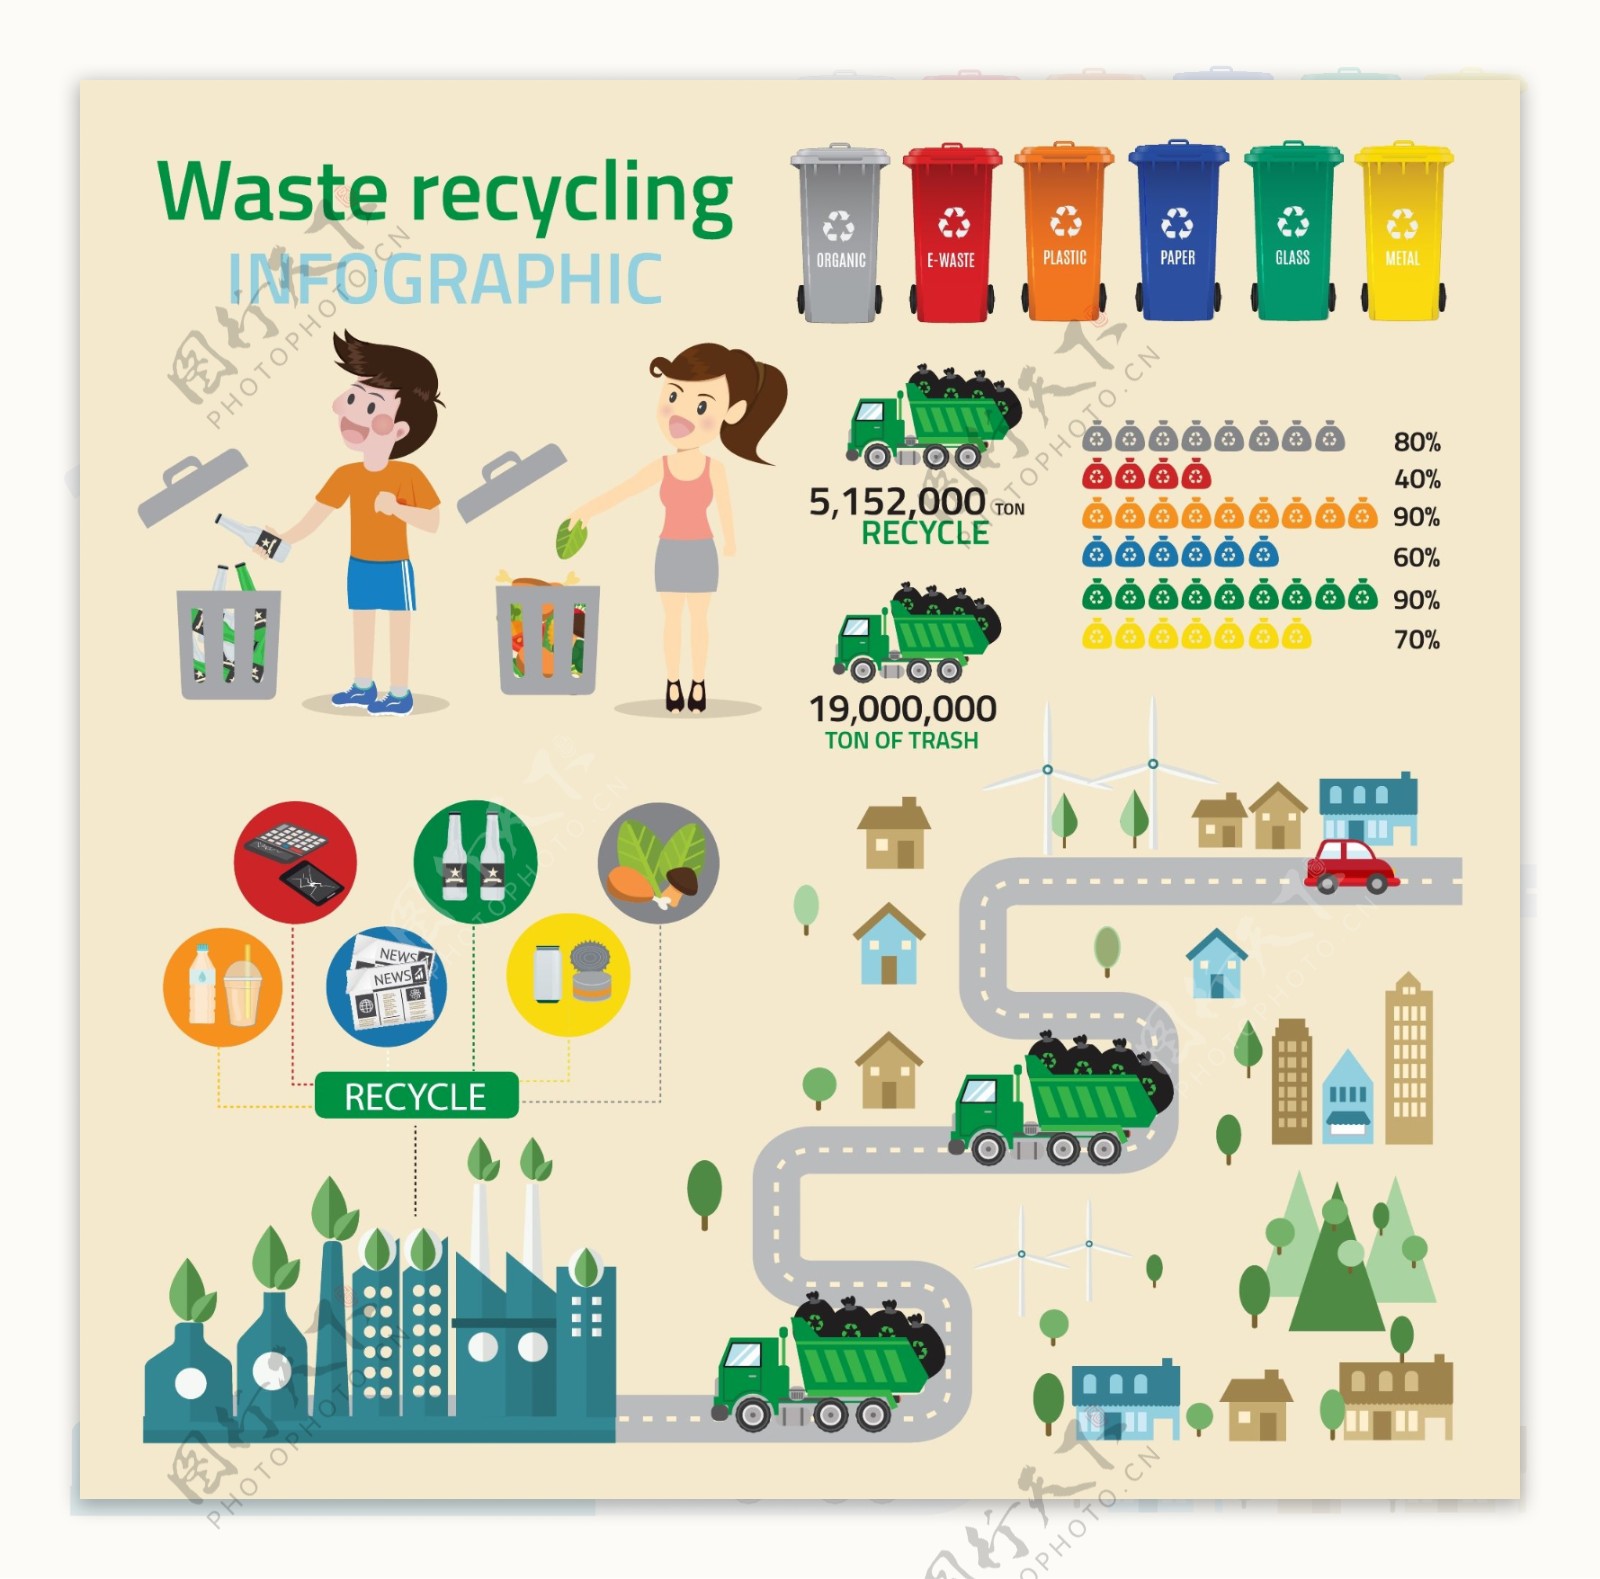 废物回收信息图表